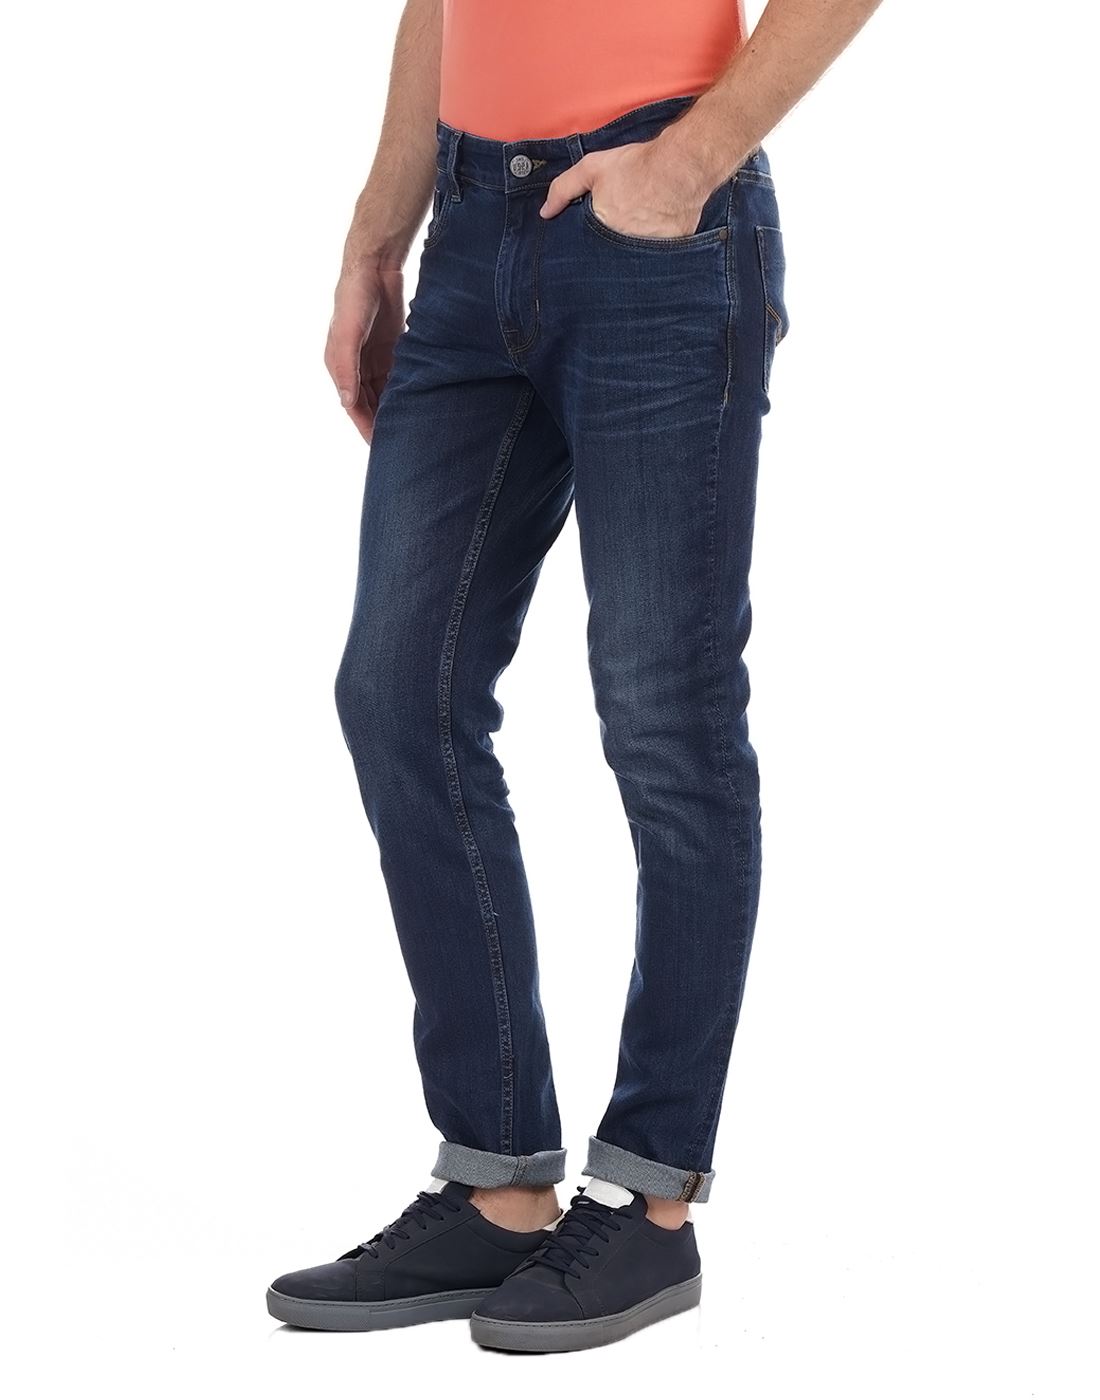 U.S. Polo Assn. Men Solid Casual Wear Jean